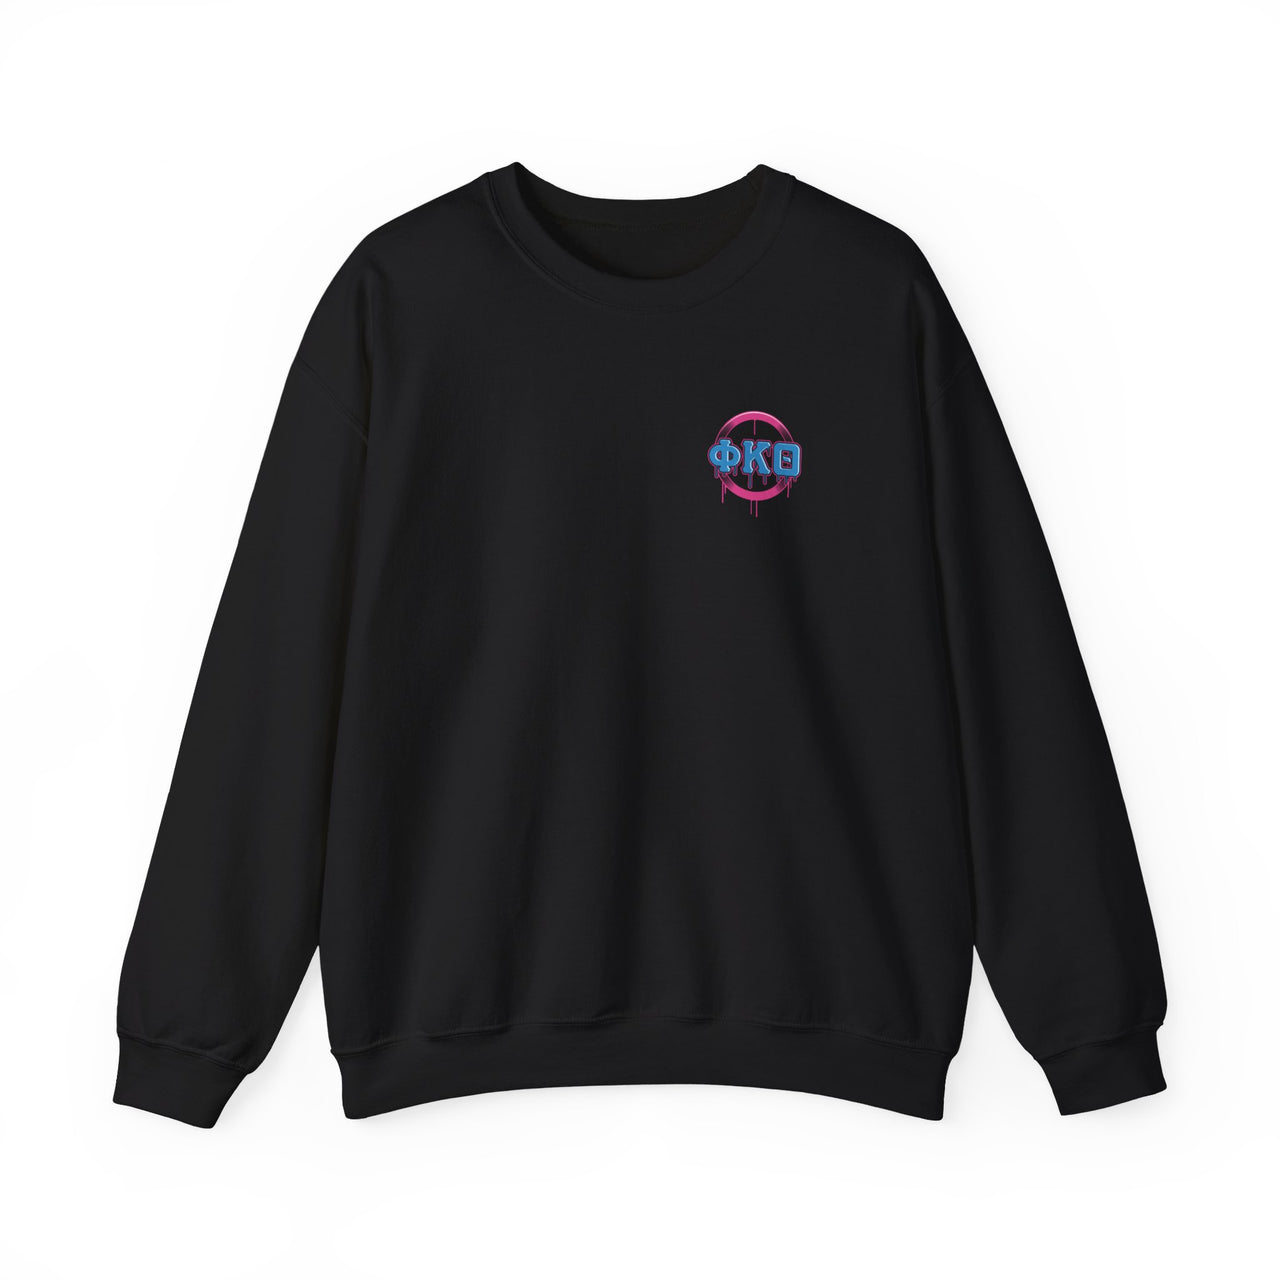 Phi Kappa Theta Graphic Crewneck Sweatshirt | Liberty Rebel